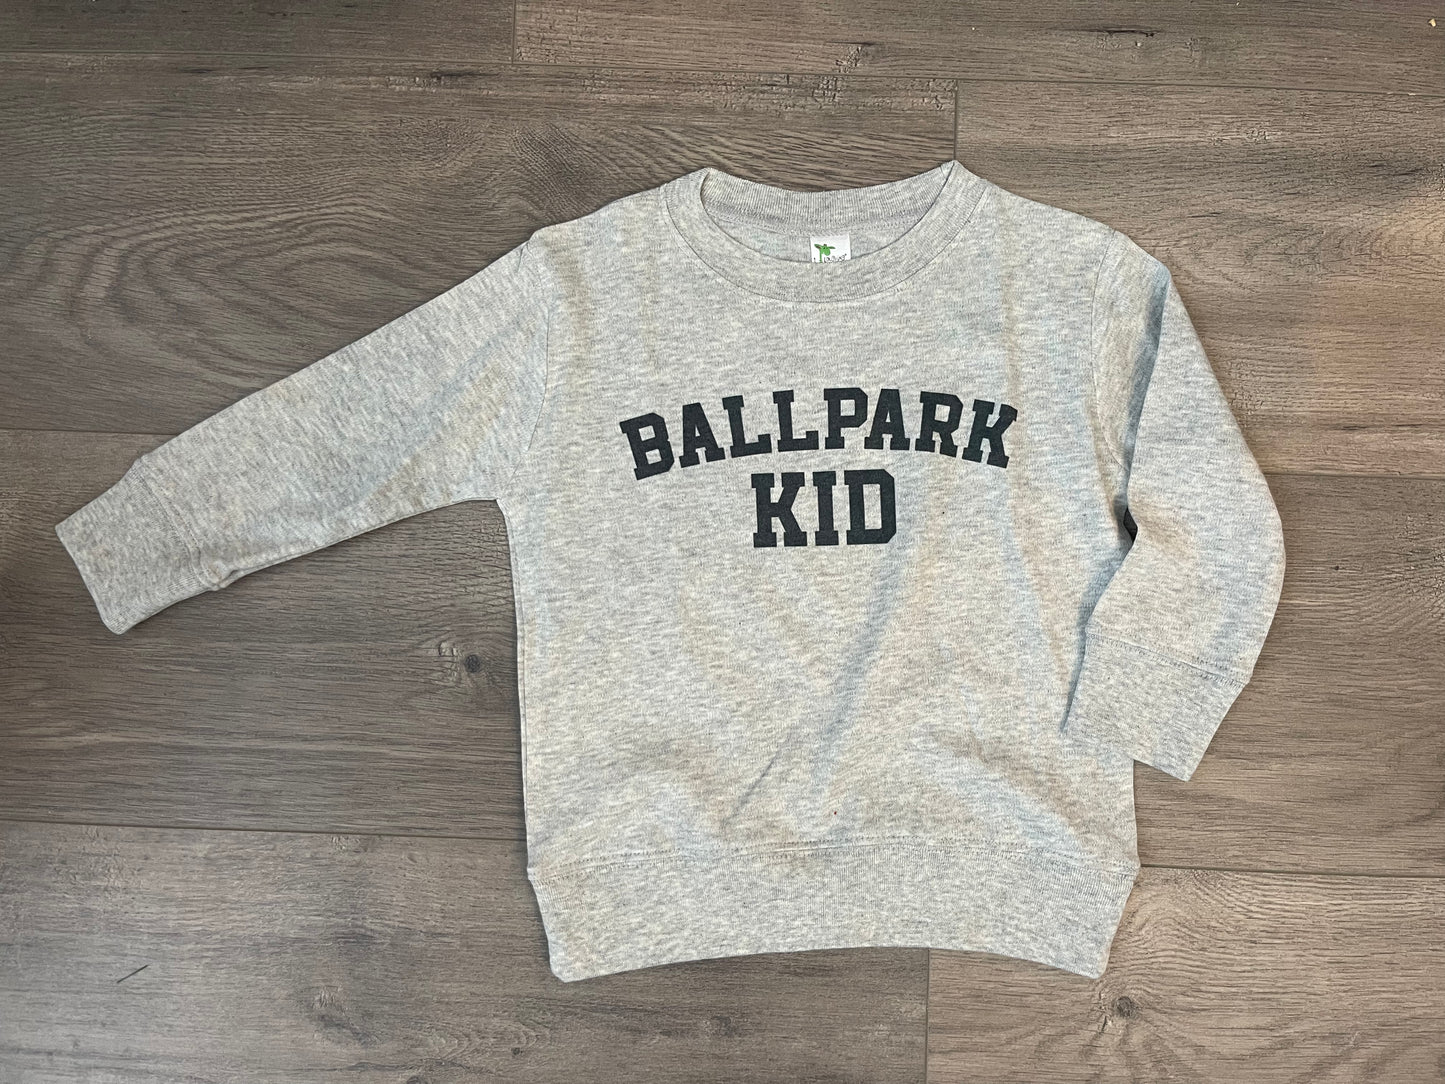 Ballpark Kid